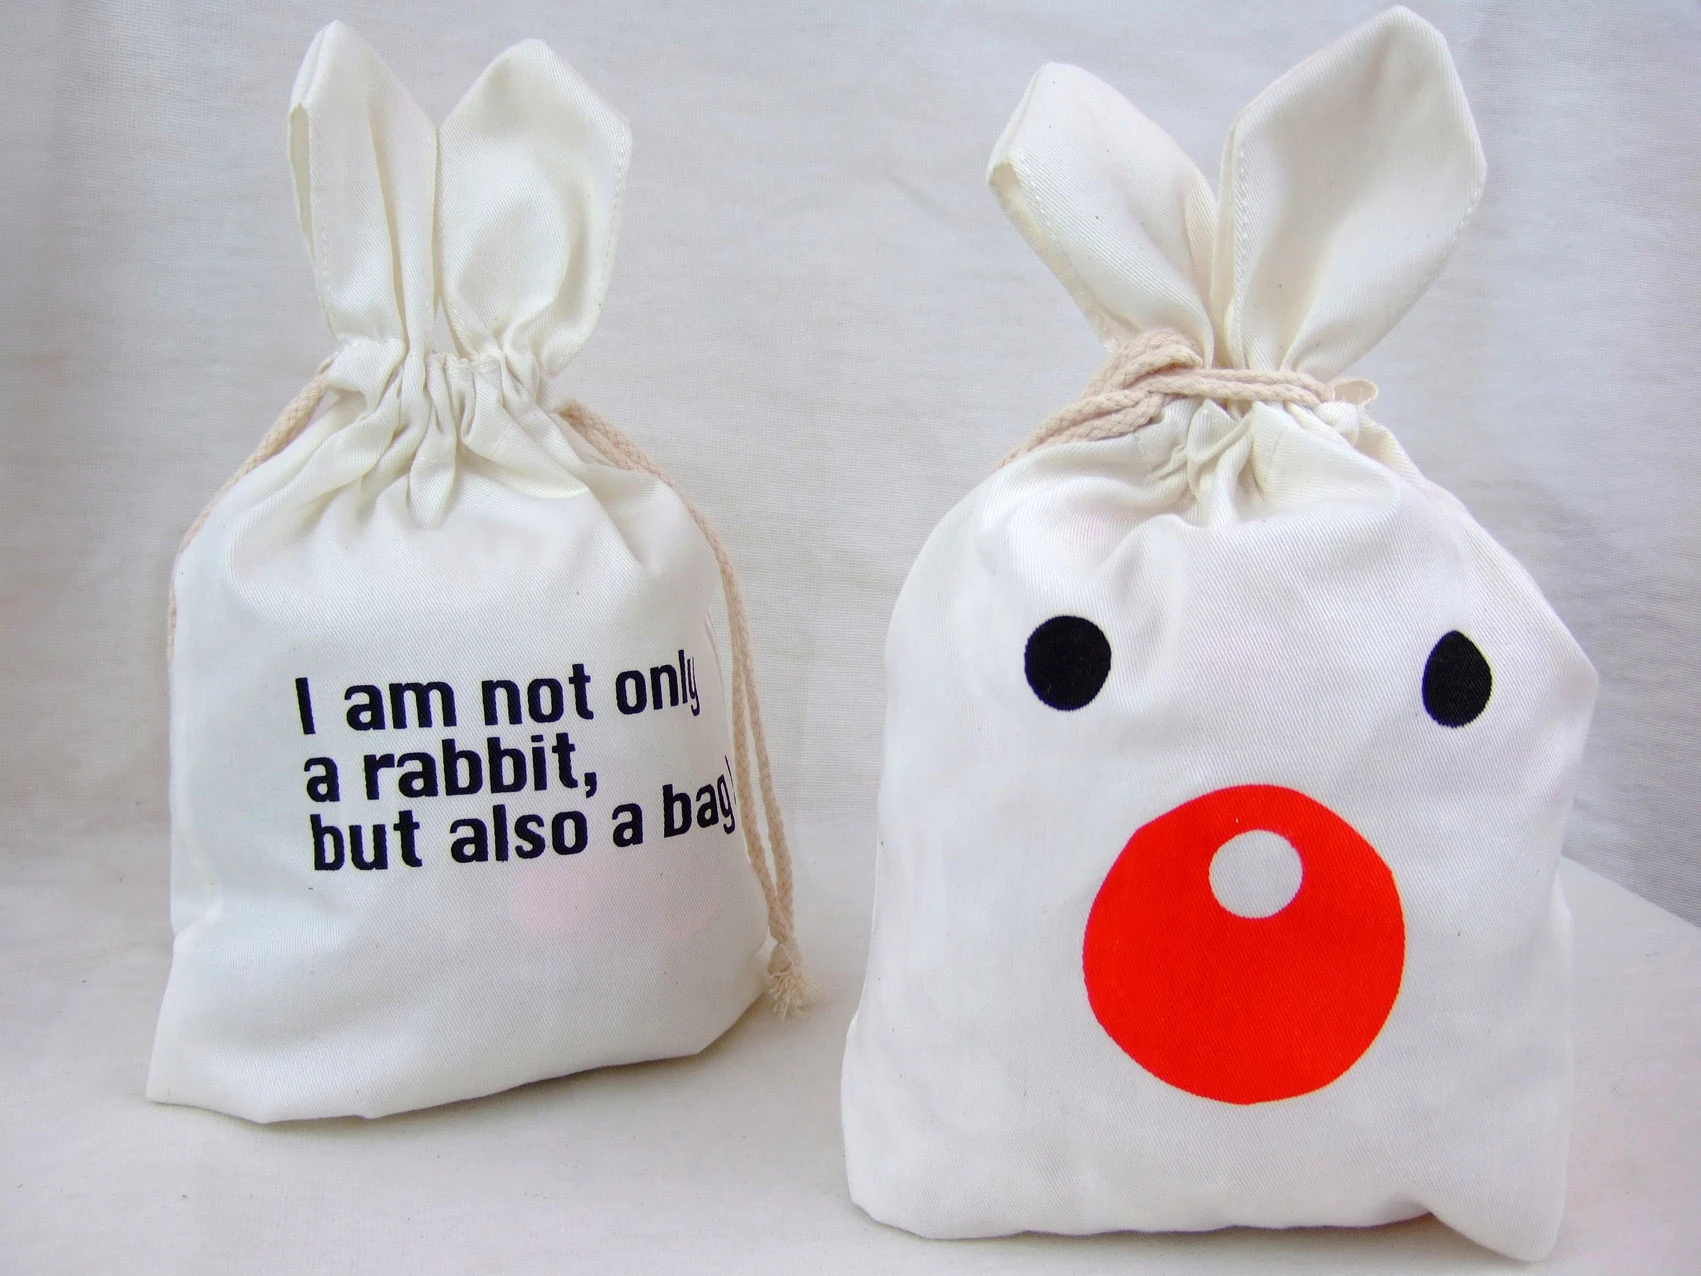 胚布(棉)兔子造型環保袋-圖示僅提供印刷logo參考,客製商品設計著作權屬客戶所有